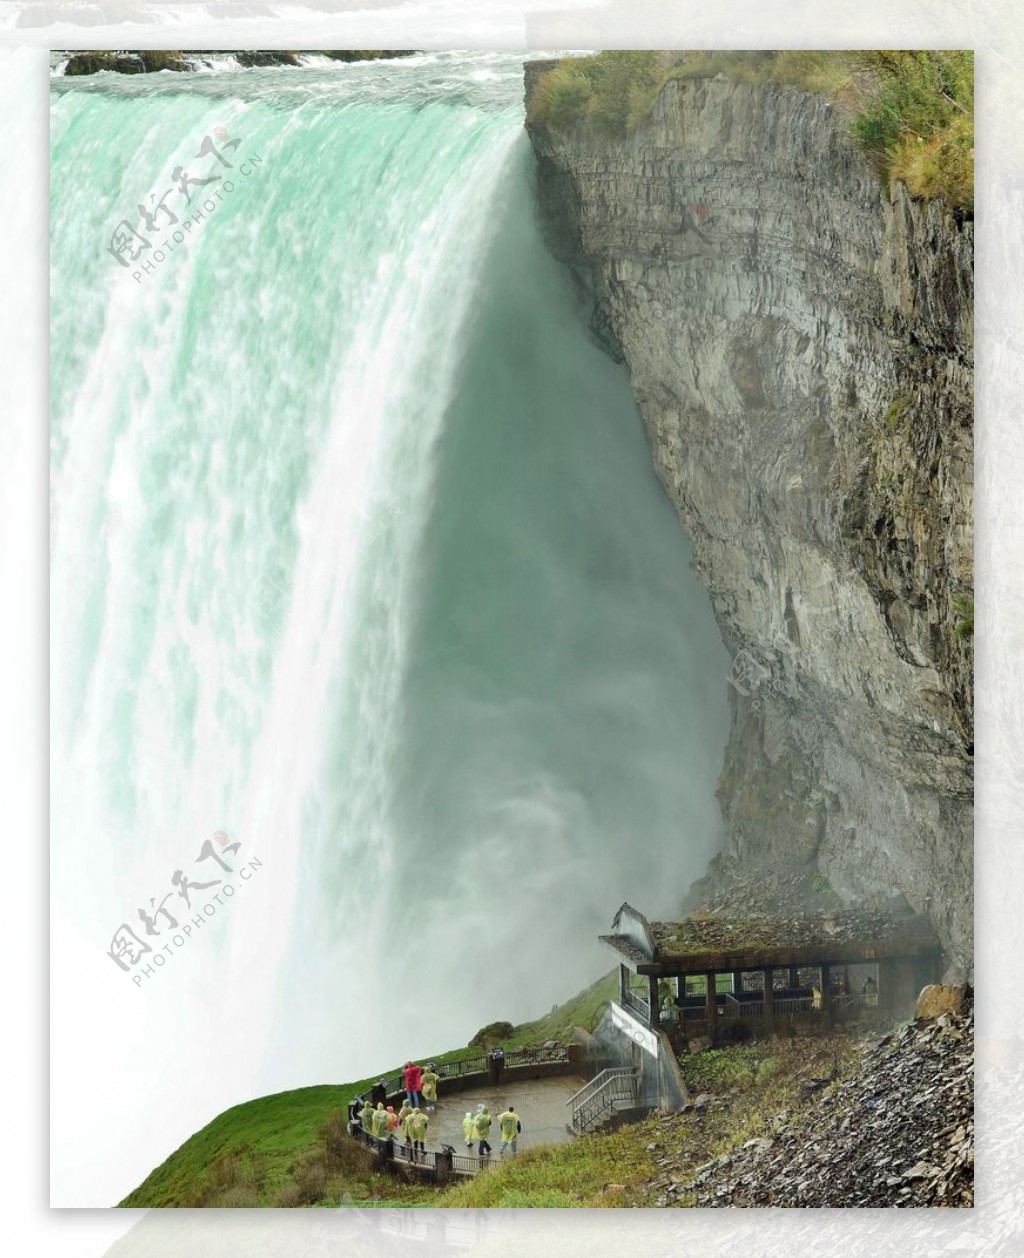 加拿大尼亚加拉大瀑布瀑布